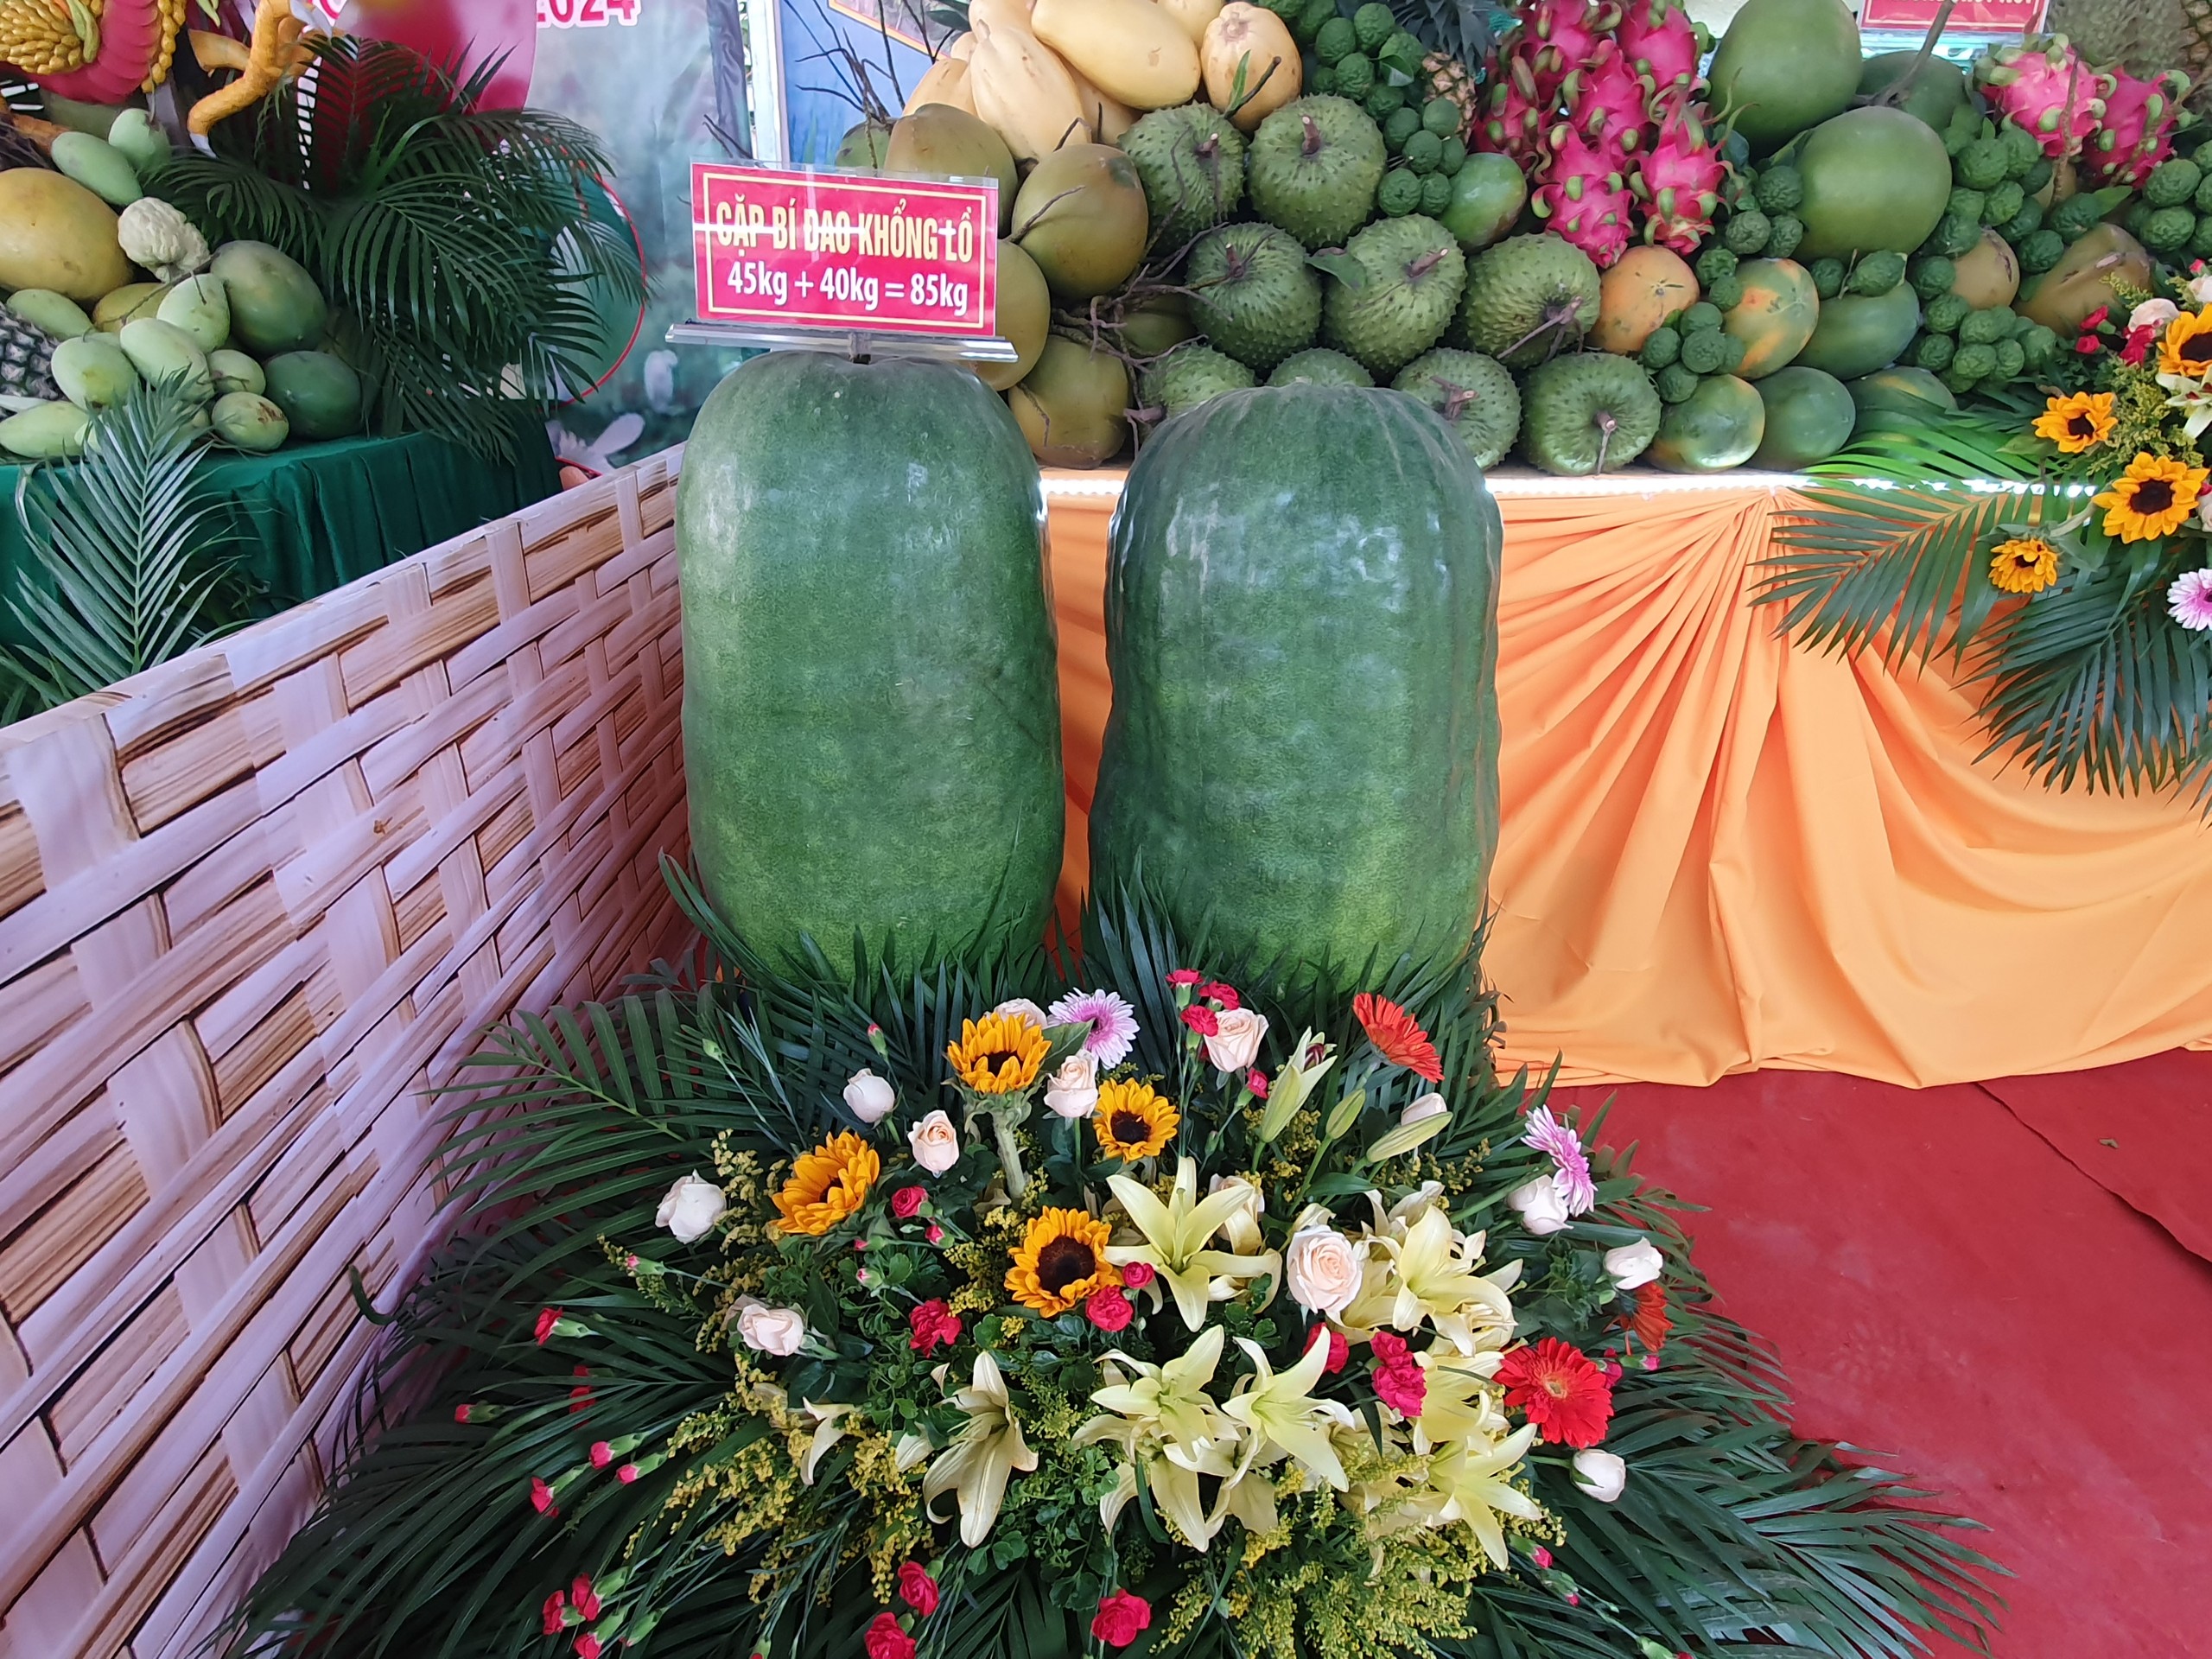 Cặp Bí đao khổng lồ nặng 85kg trưng bày tại khu vực rau, củ, quả độc lạ.